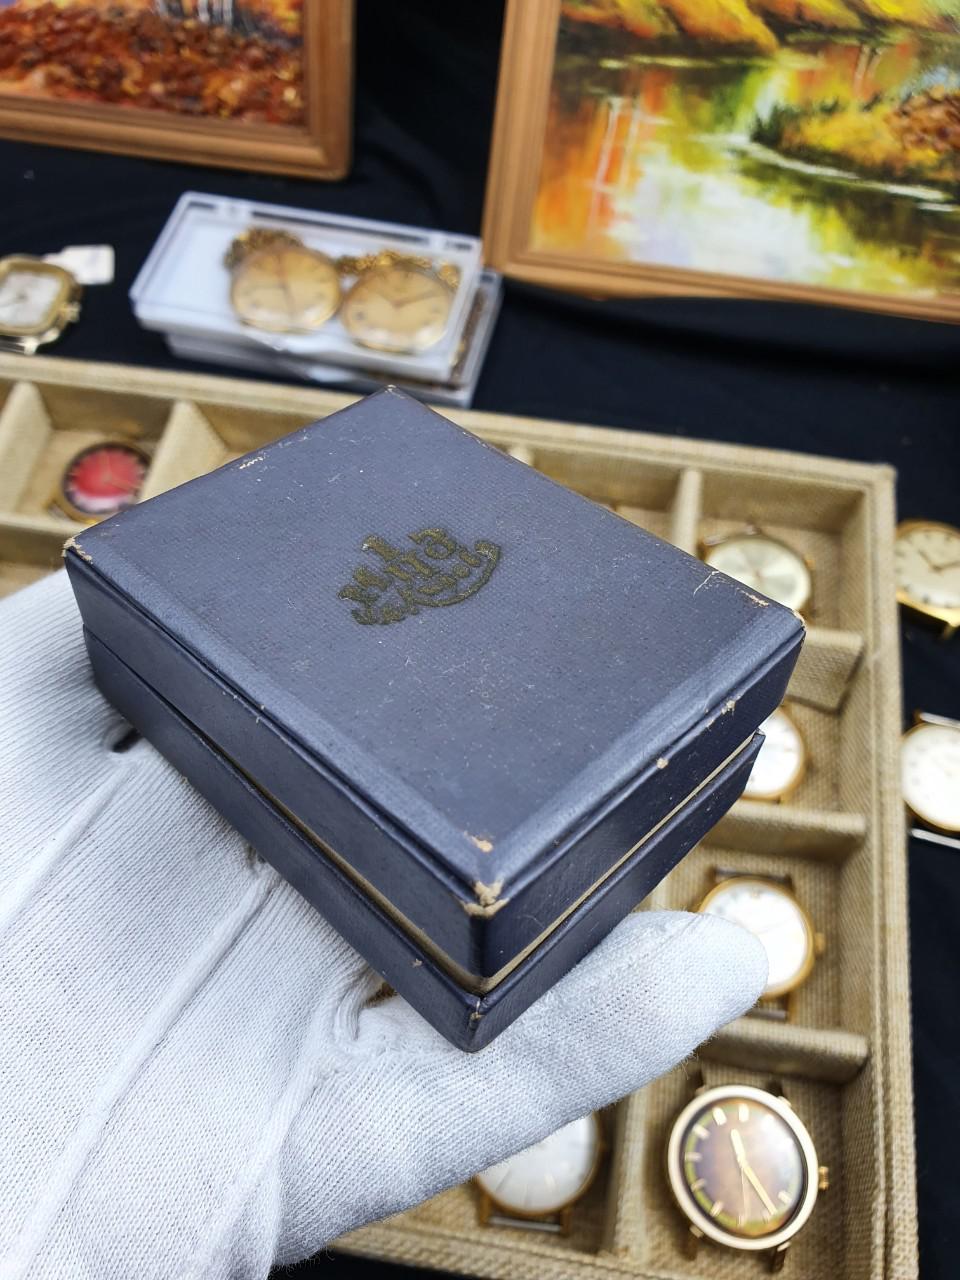 Đồng hồ Poljot 23 chân kính nguyên rin nguyên bản đầy đủ sổ hộp